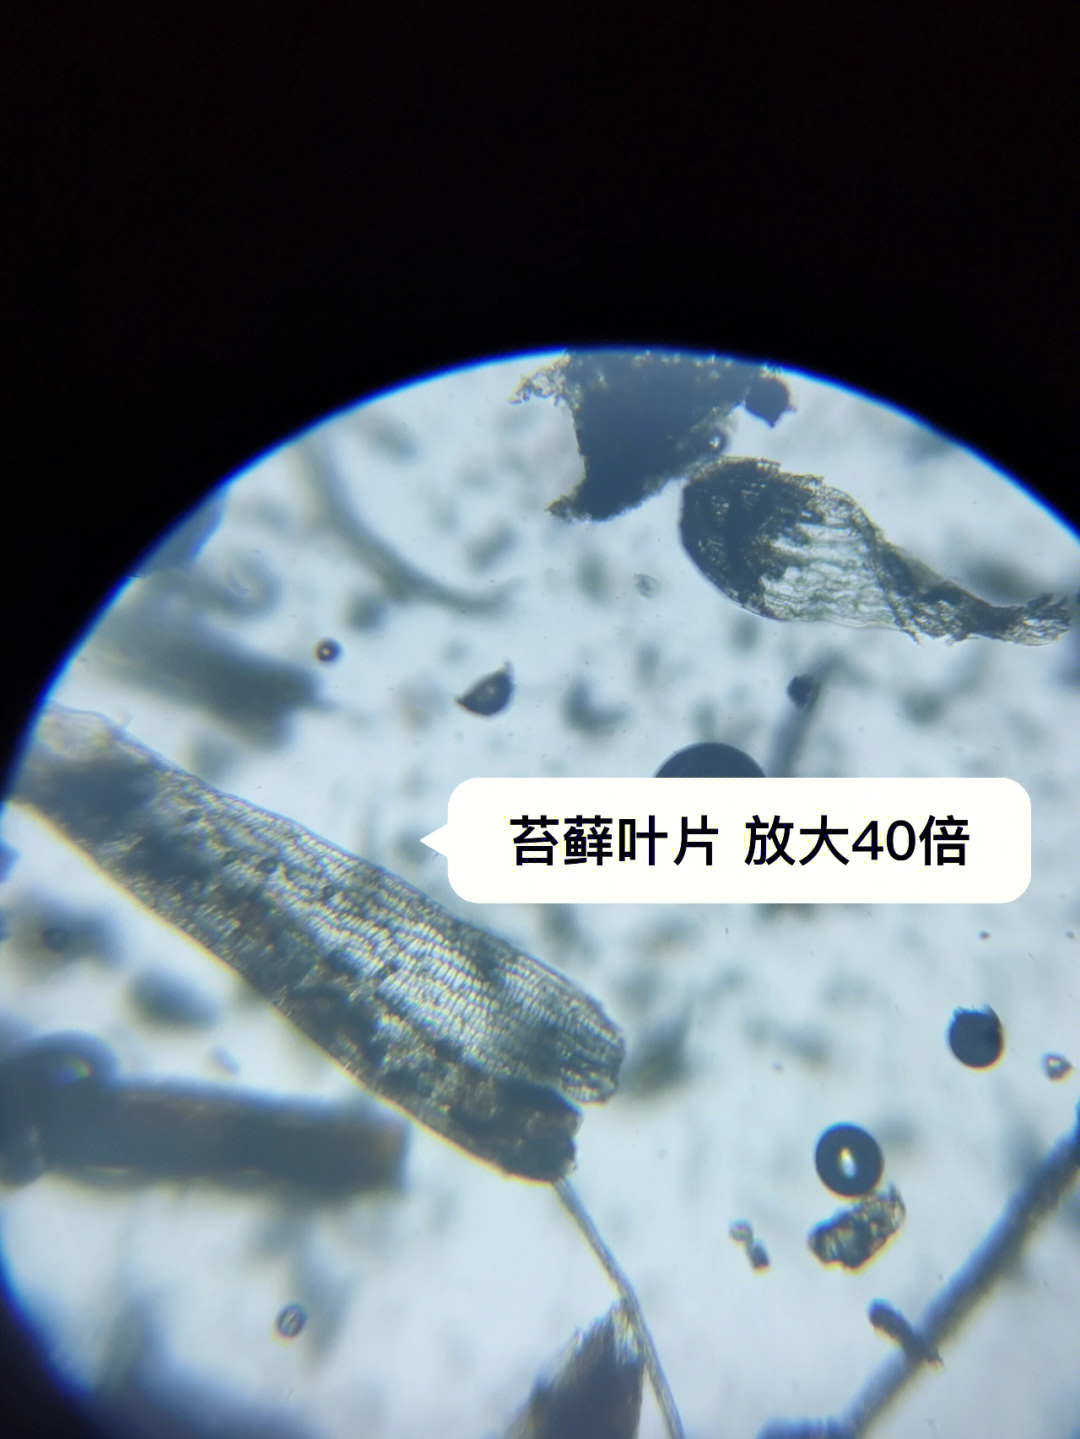 用显微镜看看品氏泥炭里有没有花粉和孢子